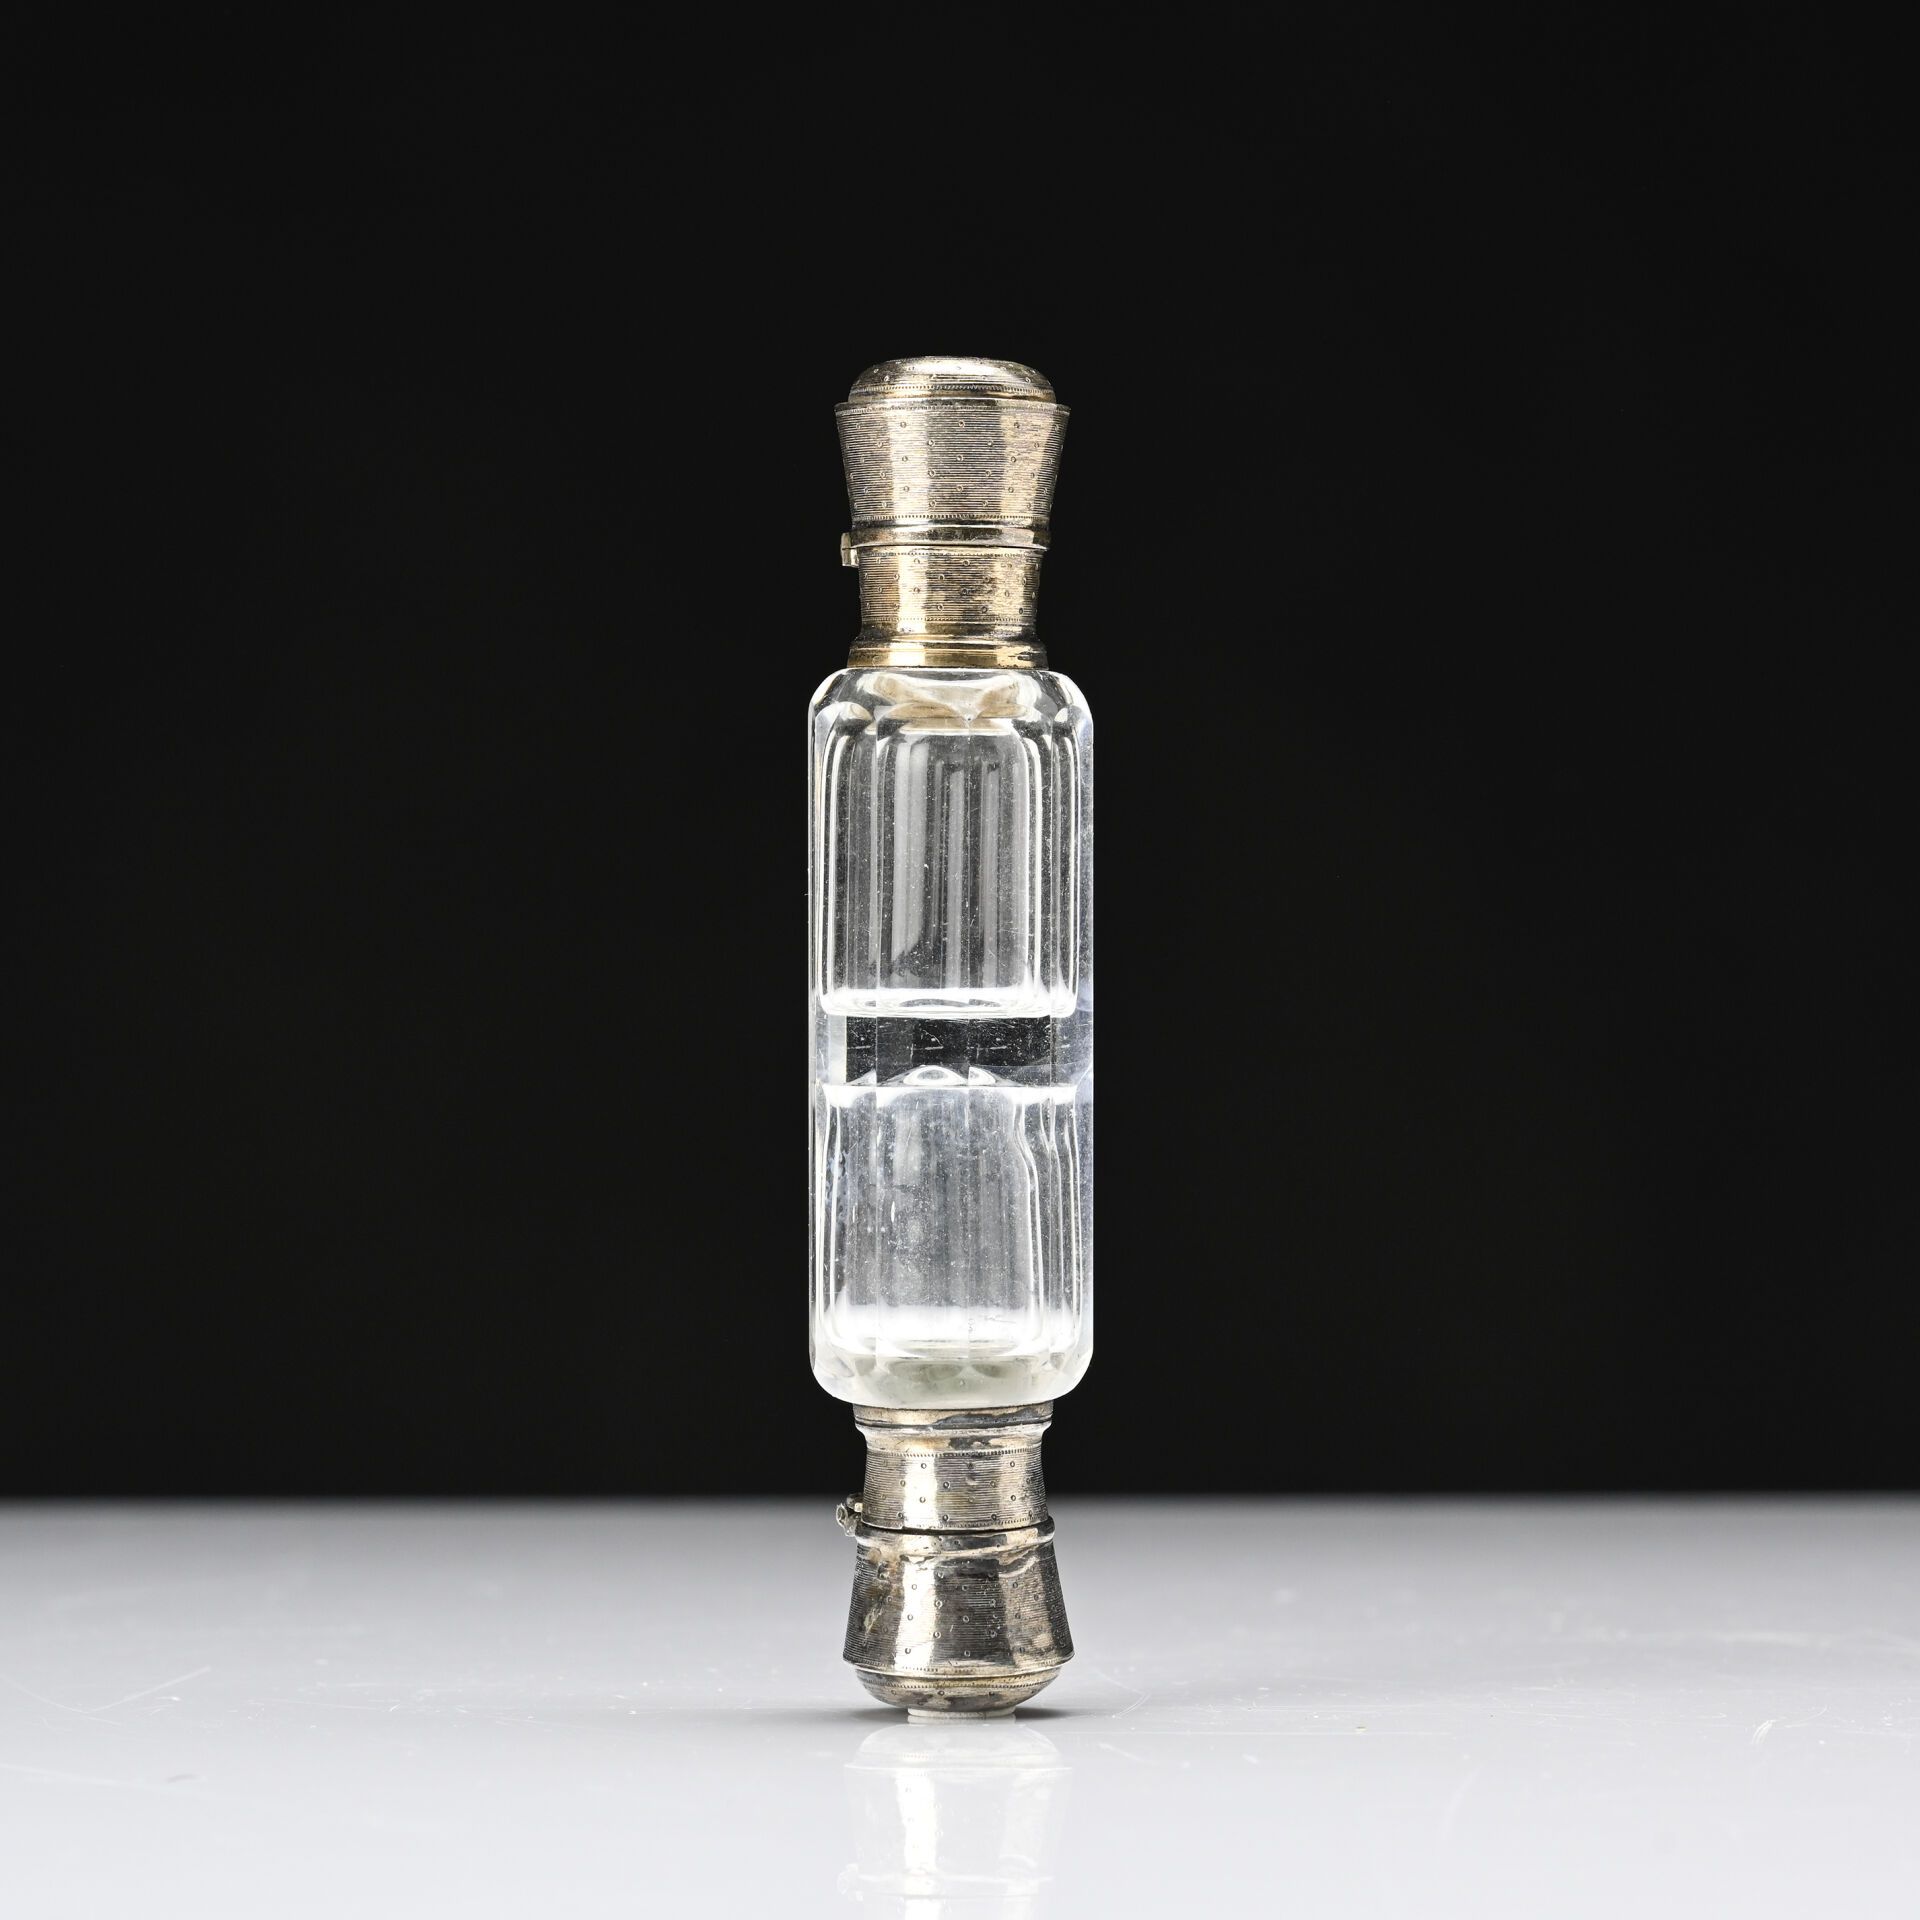 Null 小型双层水晶盐瓶，银镶嵌，重彩工艺
十九世纪末
高度：10 厘米